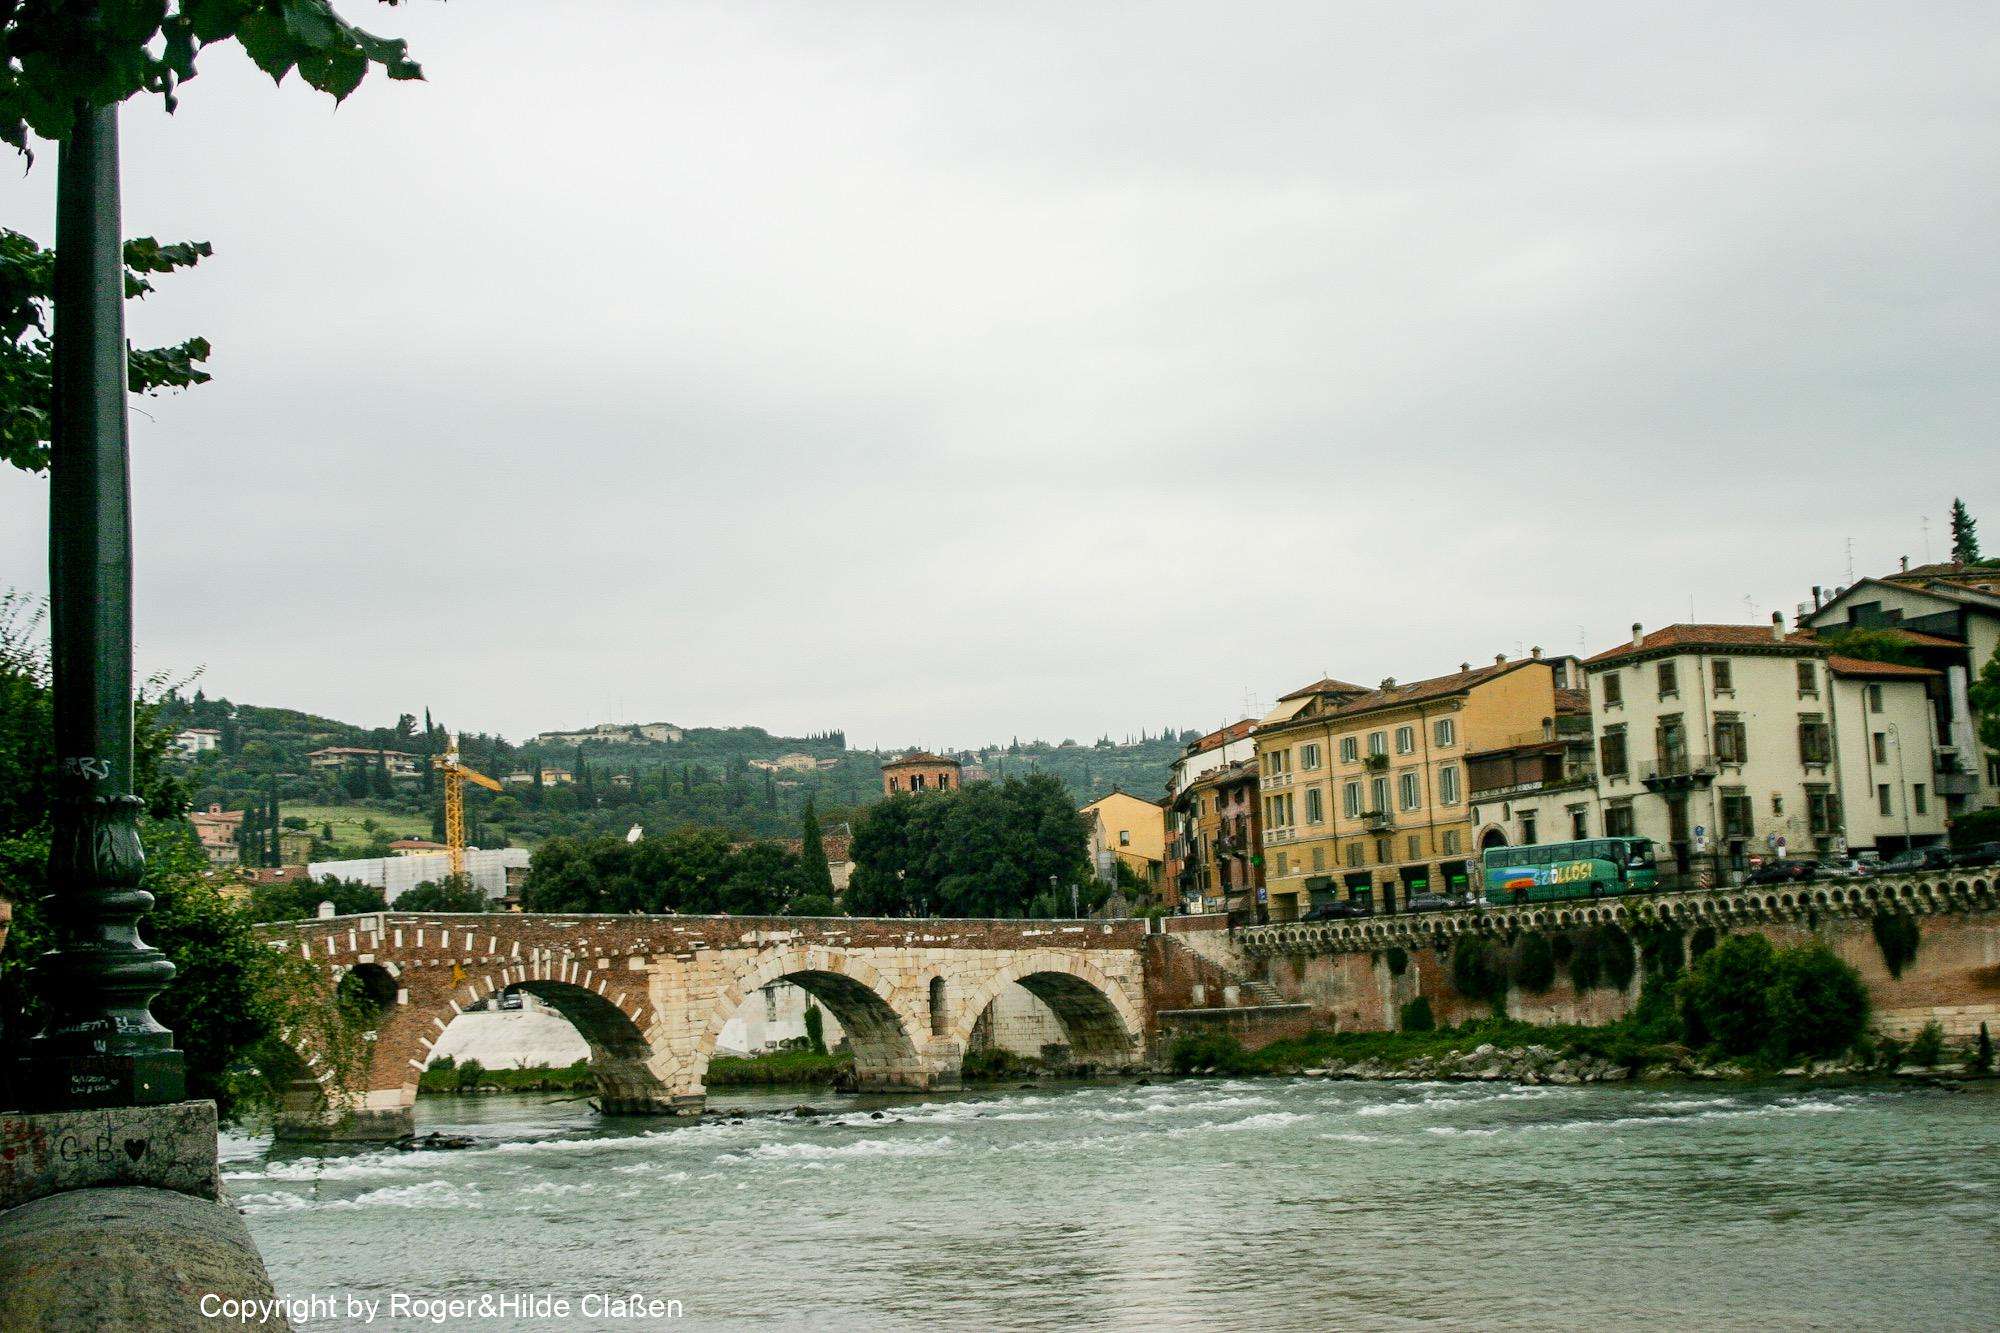 Ponte Pietra ist eine Bogenbrücke in Verona